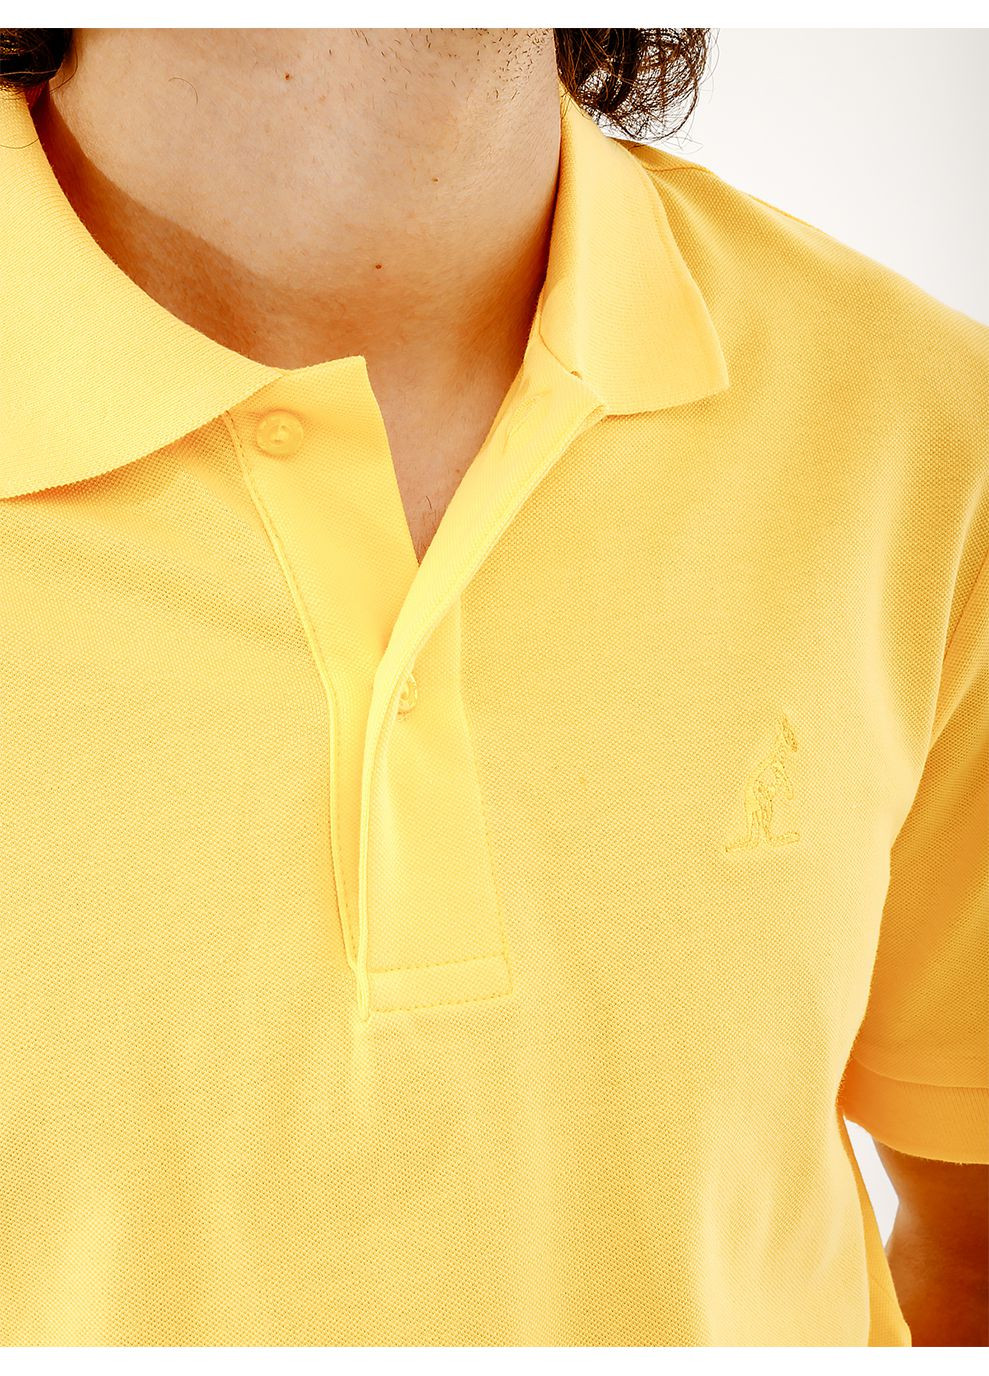 Желтая футболка-мужское поло easy pique' el polo r-fit жёлтый для мужчин Australian